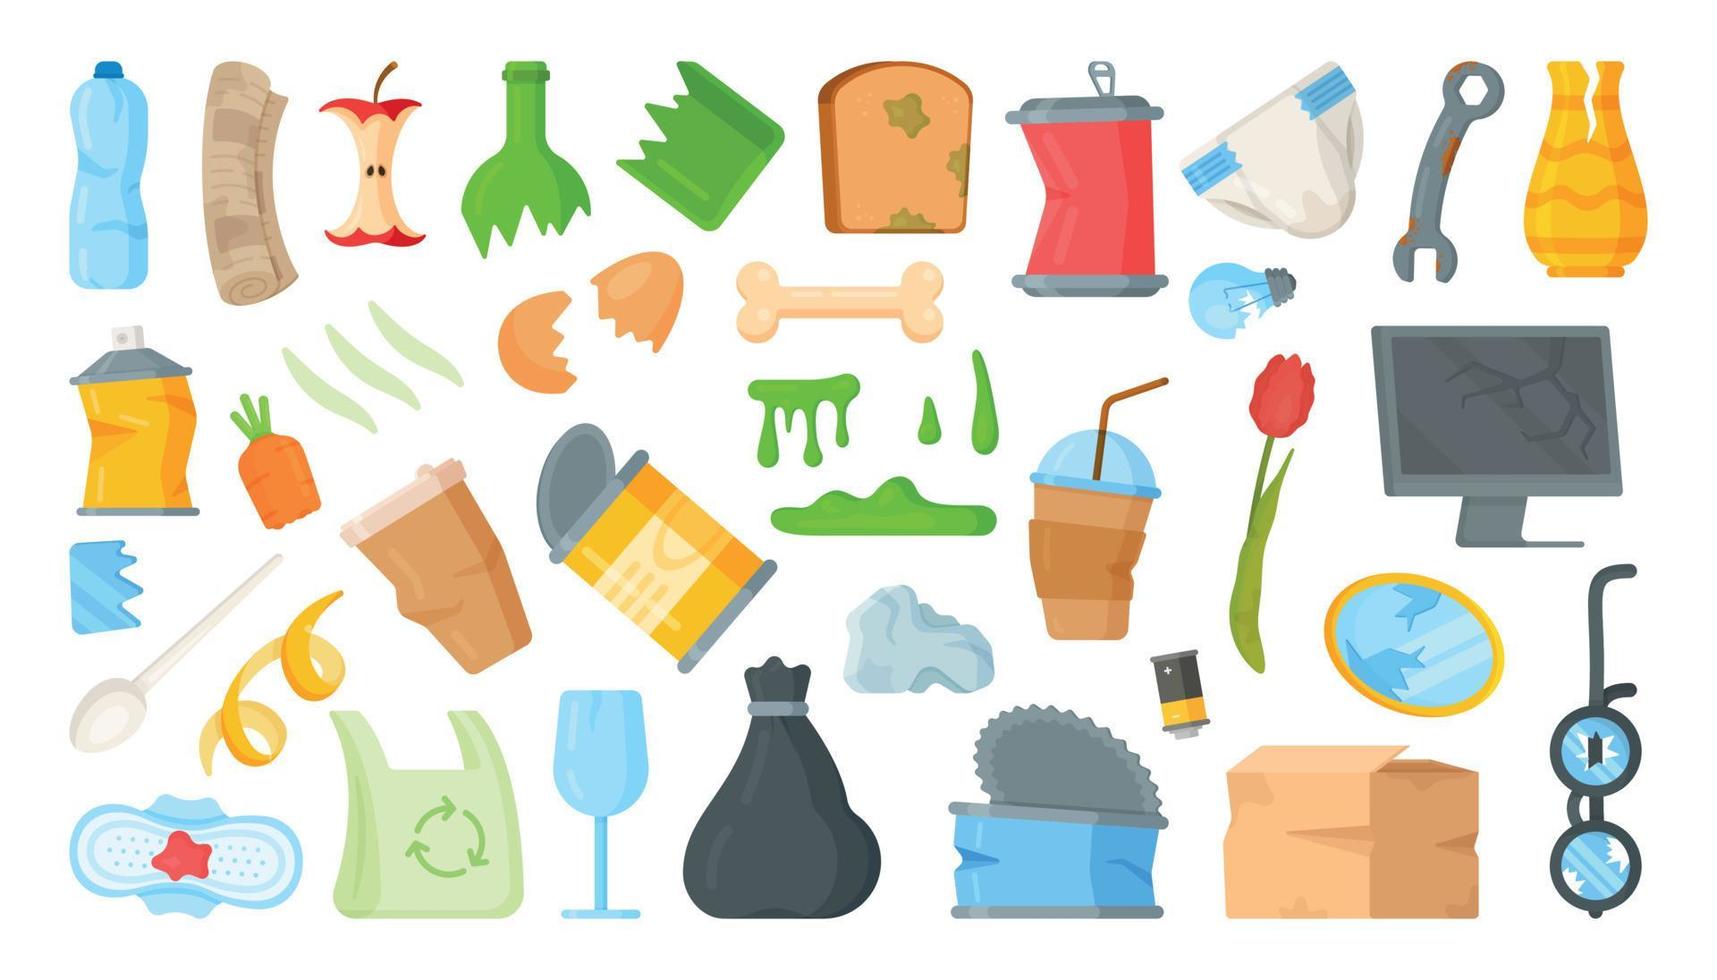 vectorillustratie van garbage collection in een container. flessen, blikjes, ingeblikt voedsel, restjes, pakkingen, kapotte dingen. vector